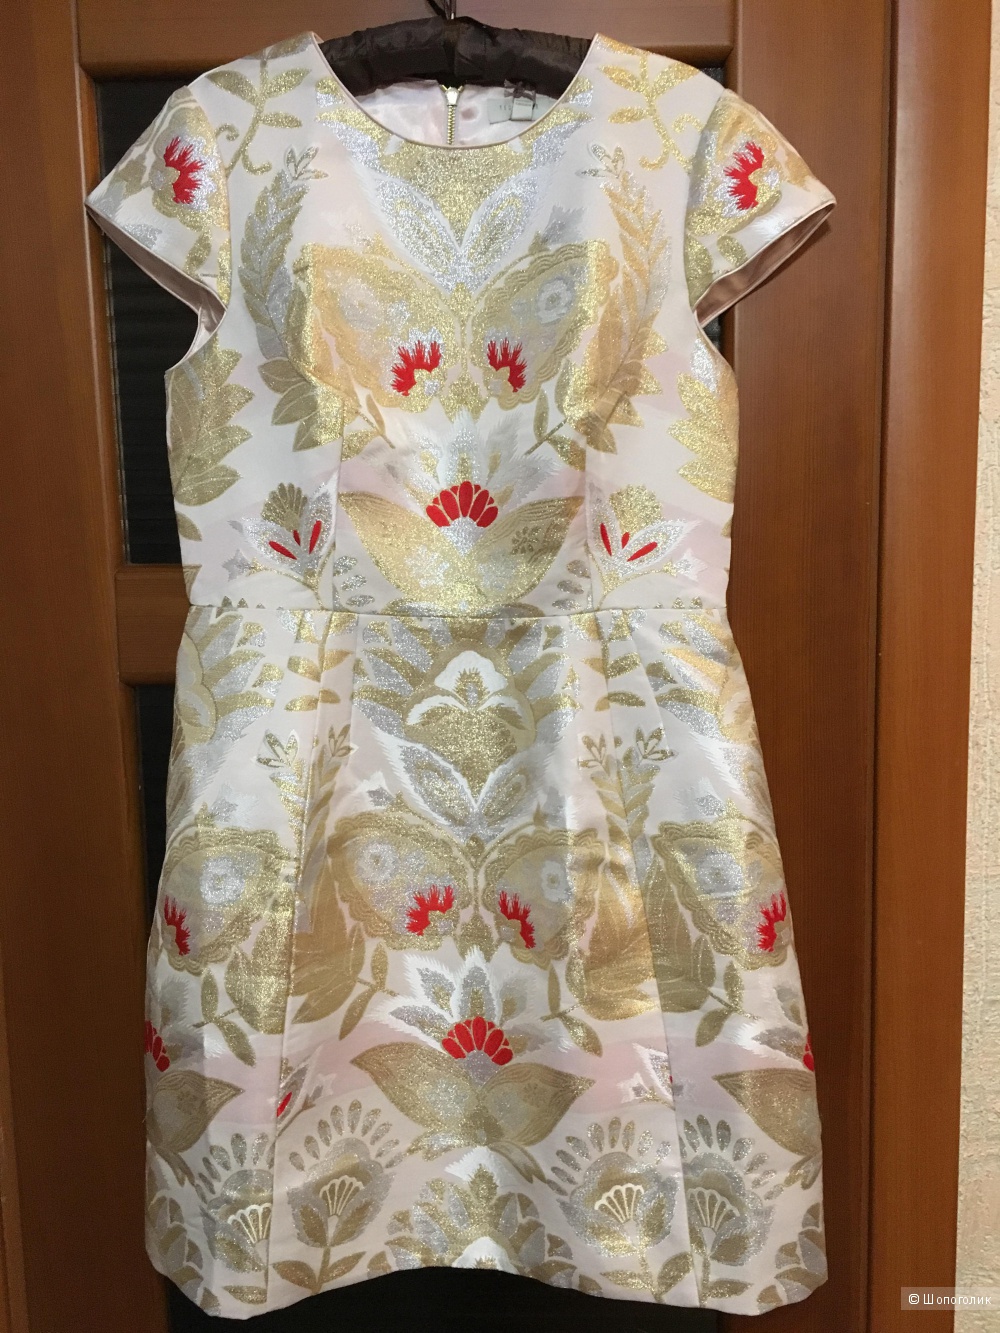 Очень нарядное платье для крупной девушки Ted Baker Opulent Tulip - Xstraw / Size 4/ на рос. 50